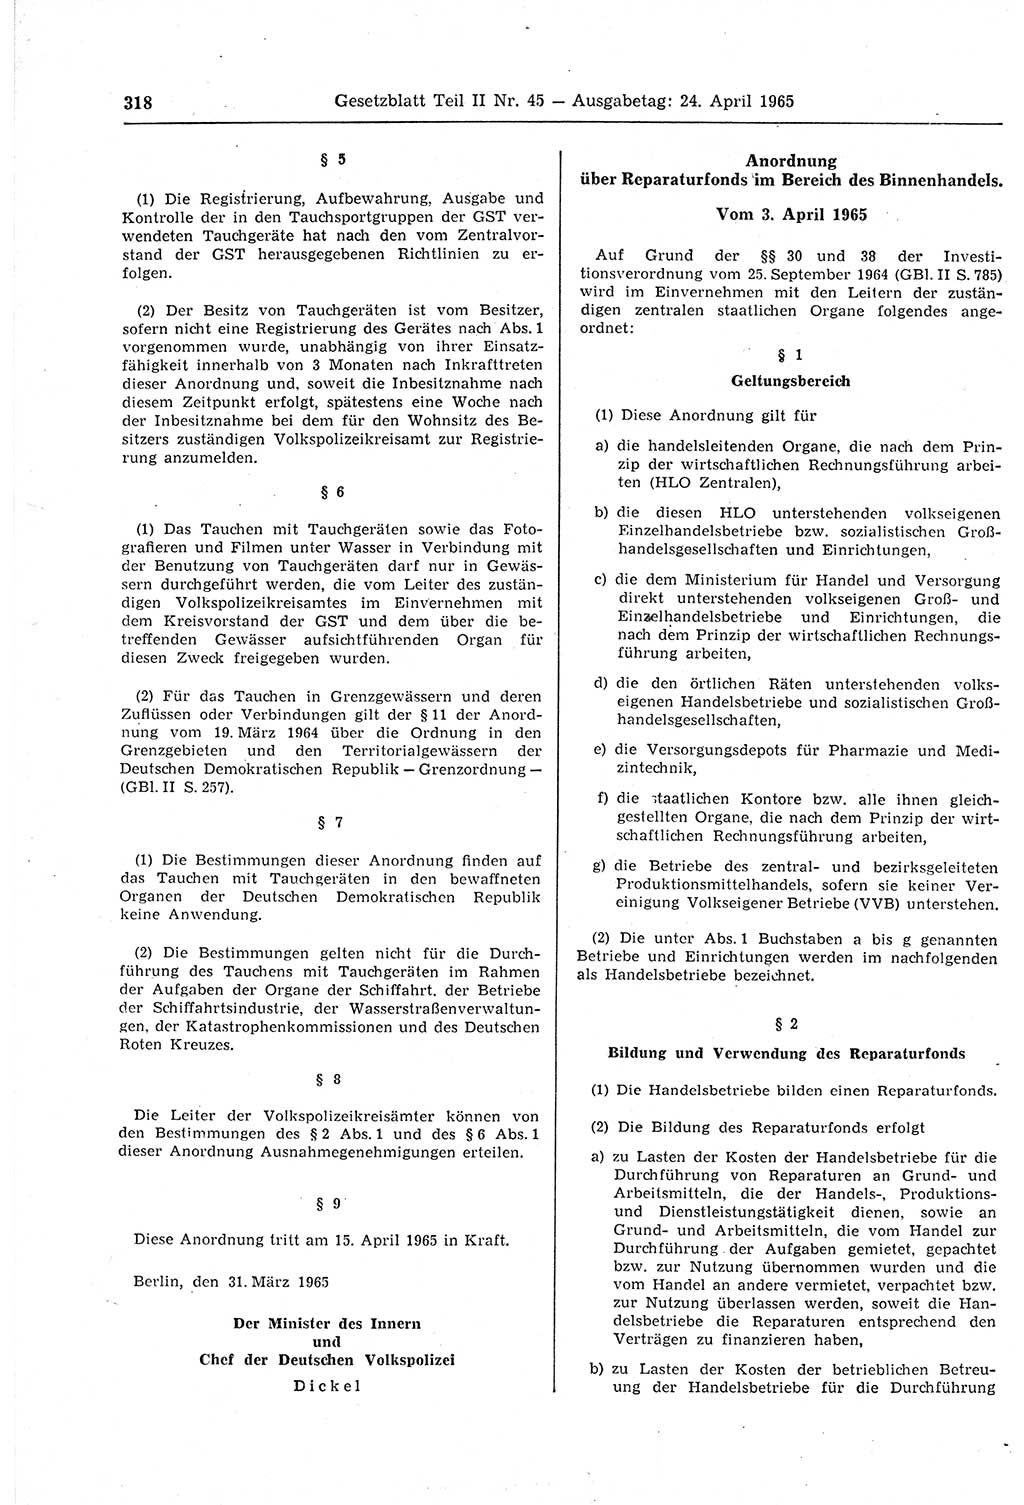 Gesetzblatt (GBl.) der Deutschen Demokratischen Republik (DDR) Teil ⅠⅠ 1965, Seite 318 (GBl. DDR ⅠⅠ 1965, S. 318)